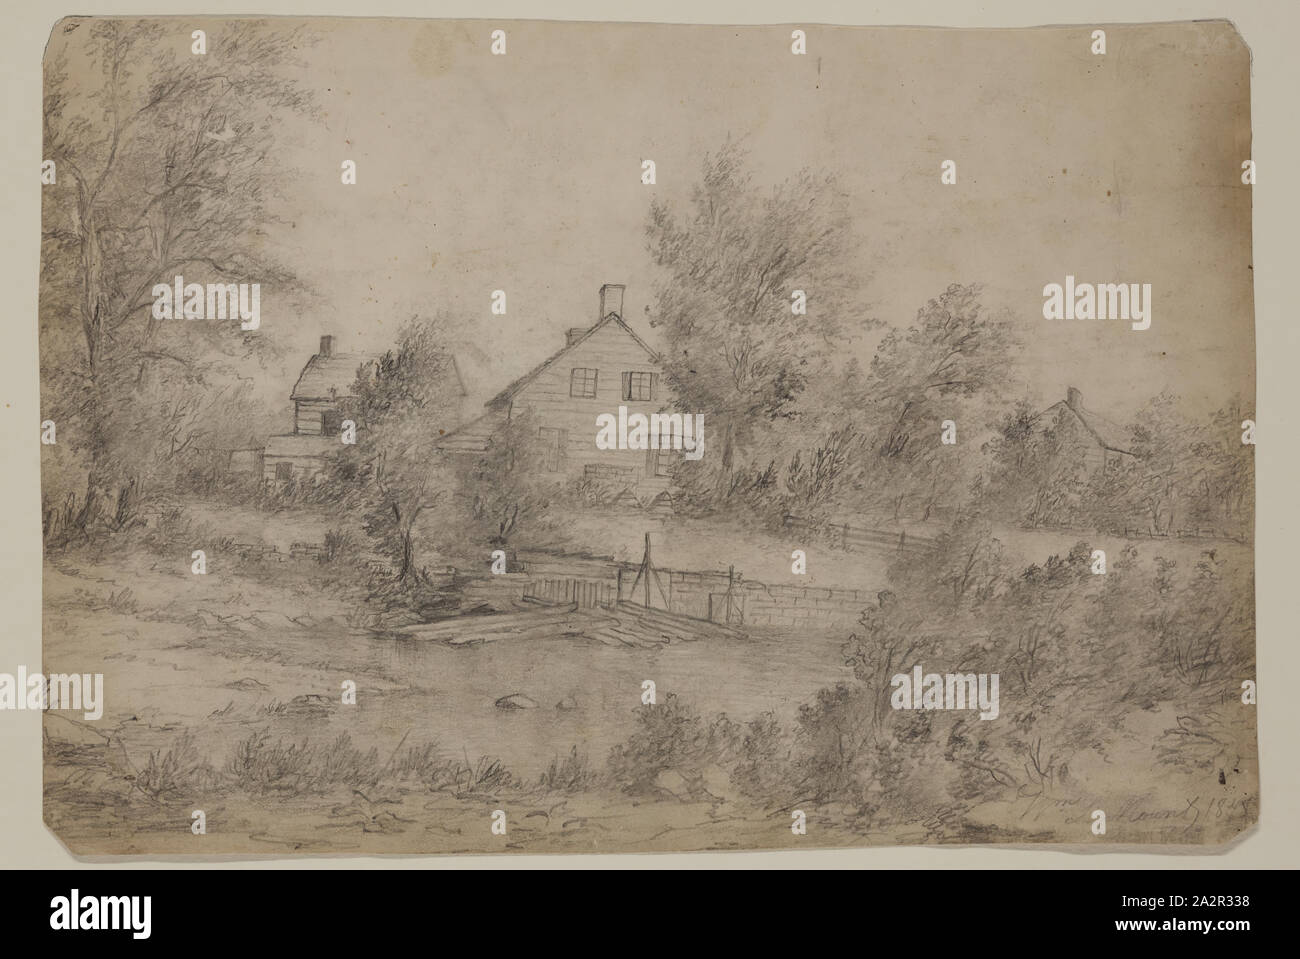 Hoja de cartulina fotografías e imágenes de alta resolución - Alamy